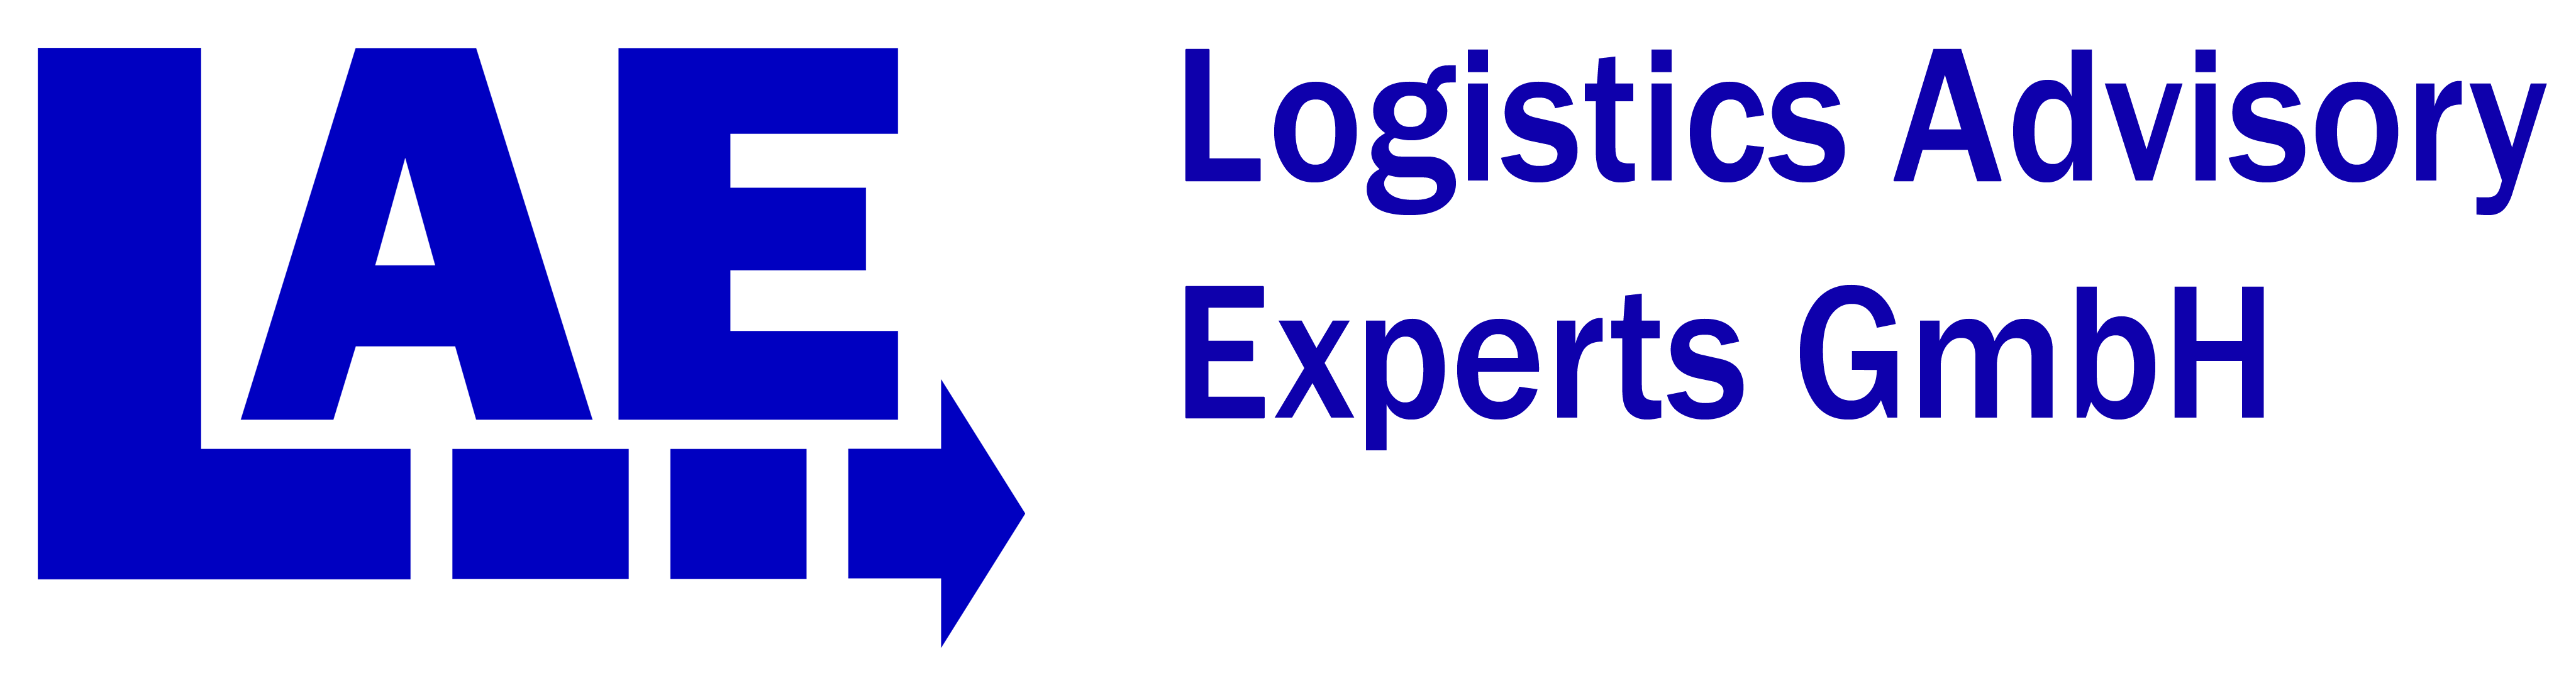 Logistics Advisory Experts GmbH